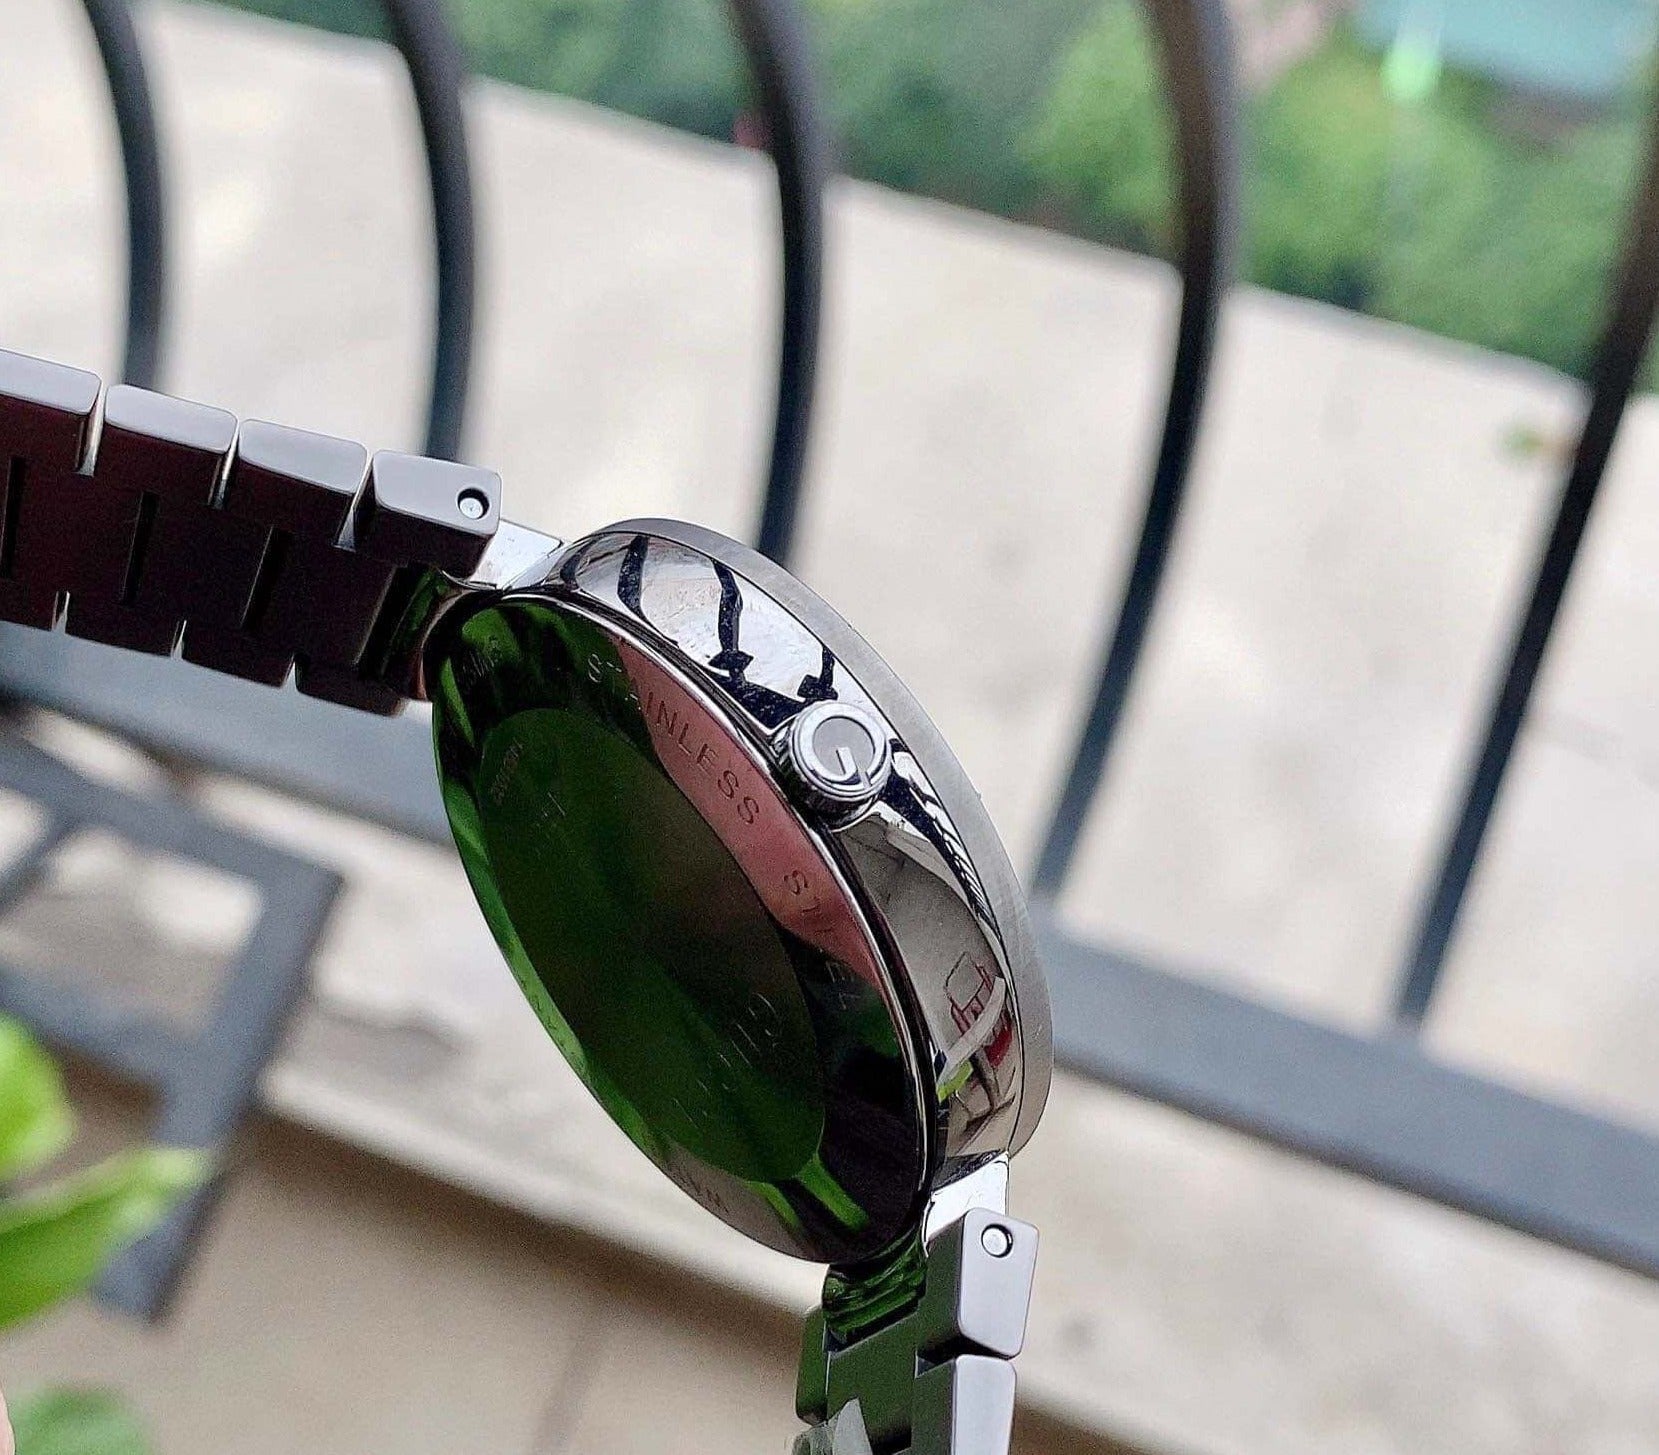 Gucci G Interlocking Quartz Grey Dial Grey Steel Strap Watch For Men - YA133210